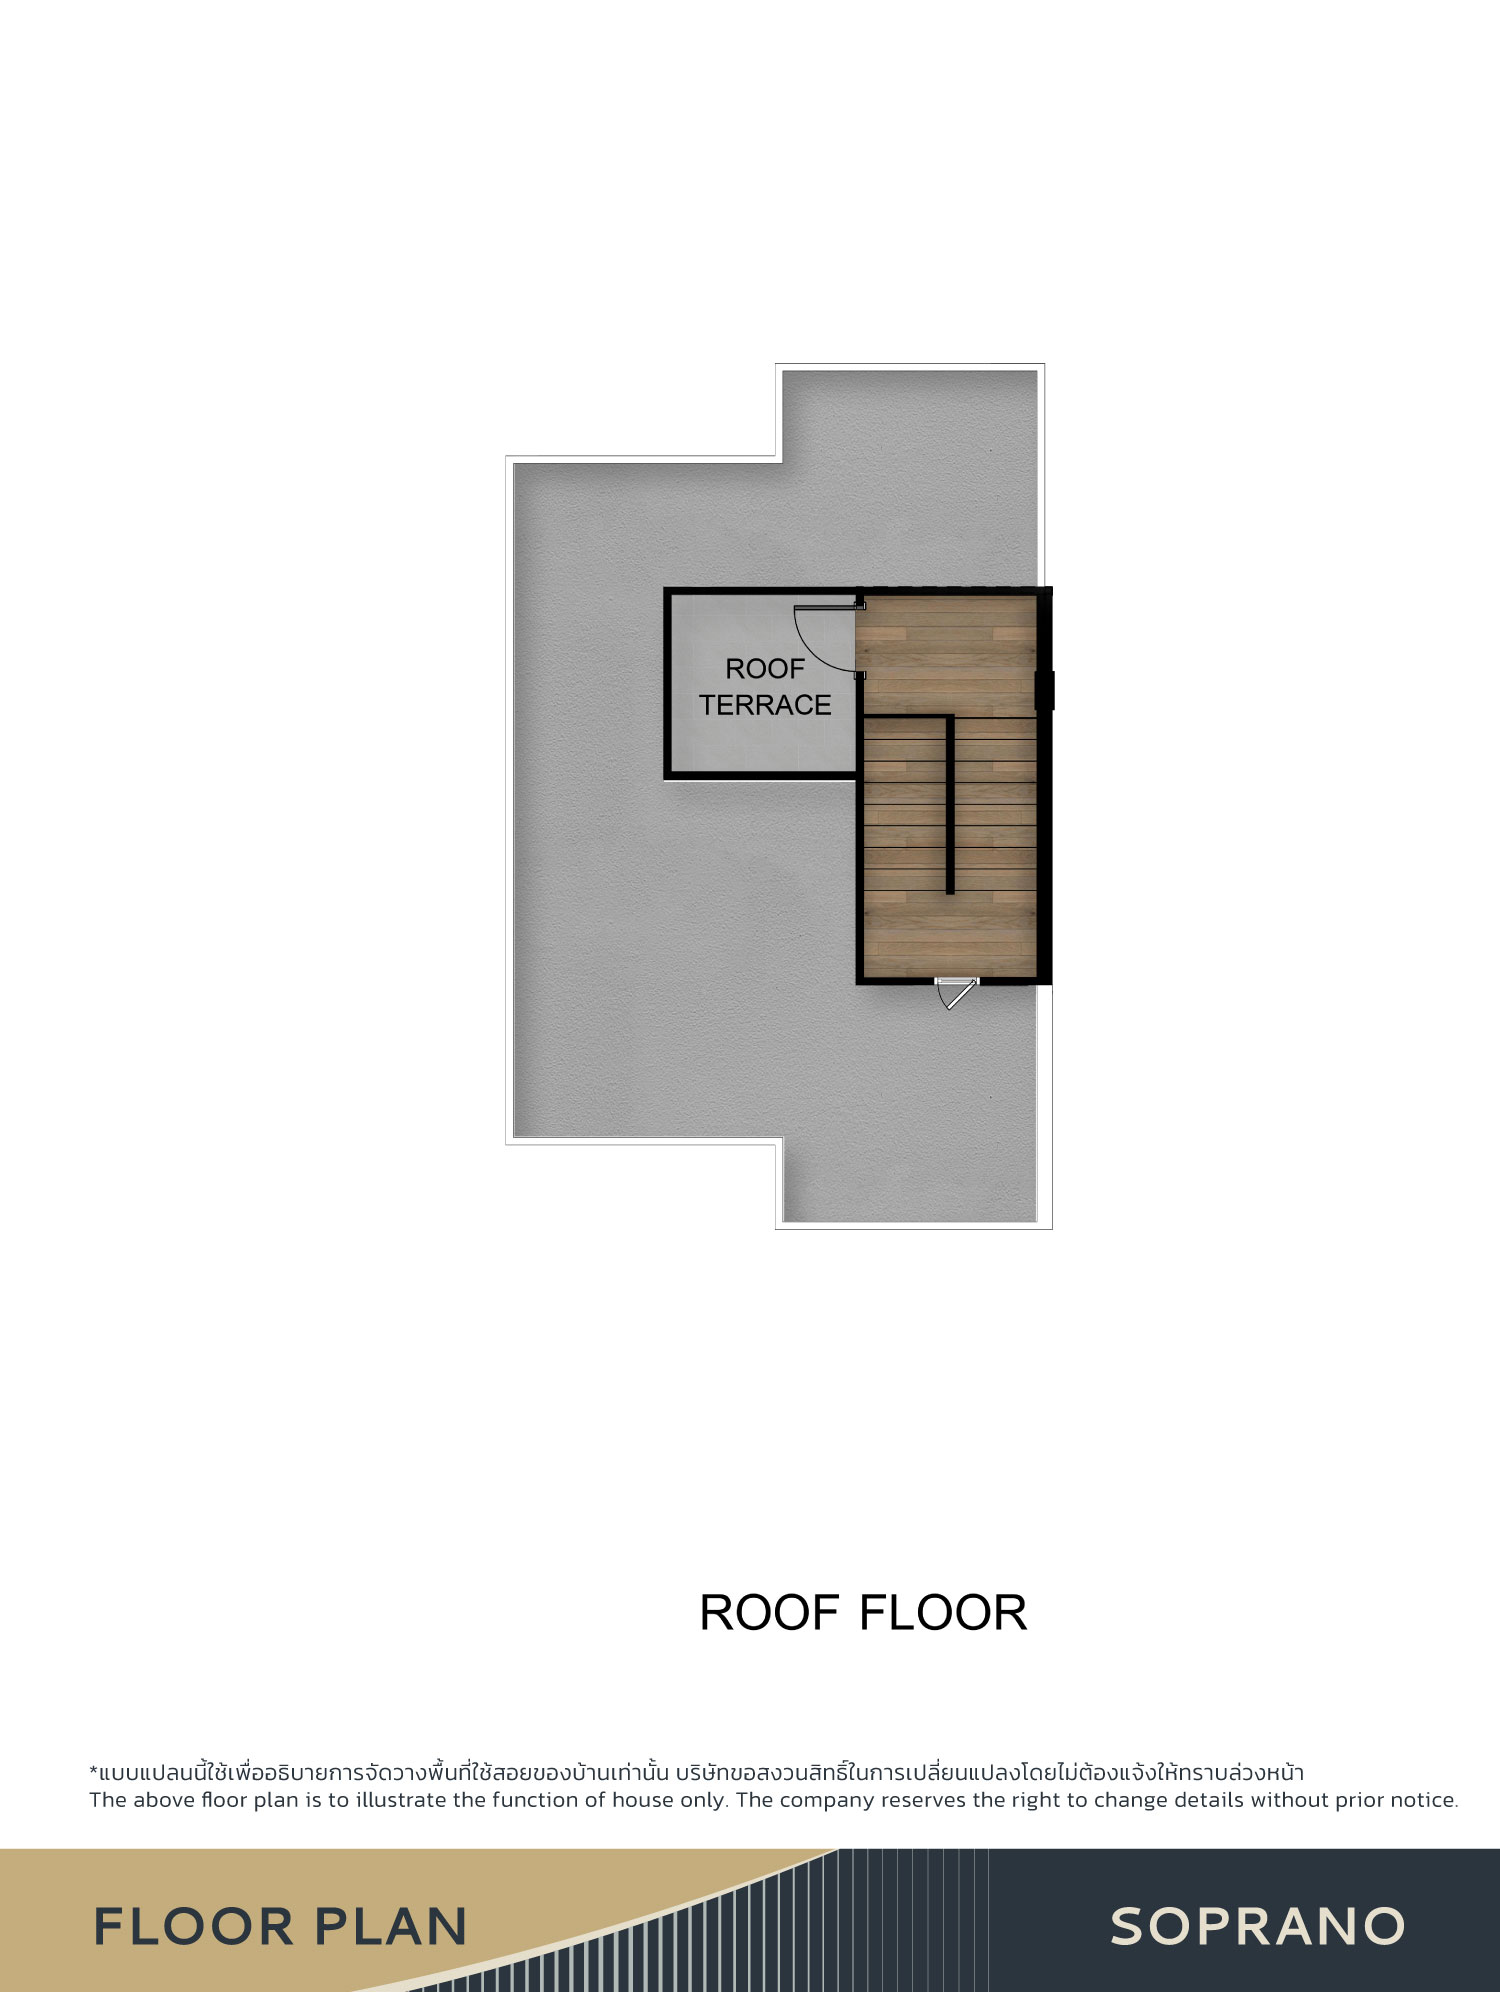 Roof floor